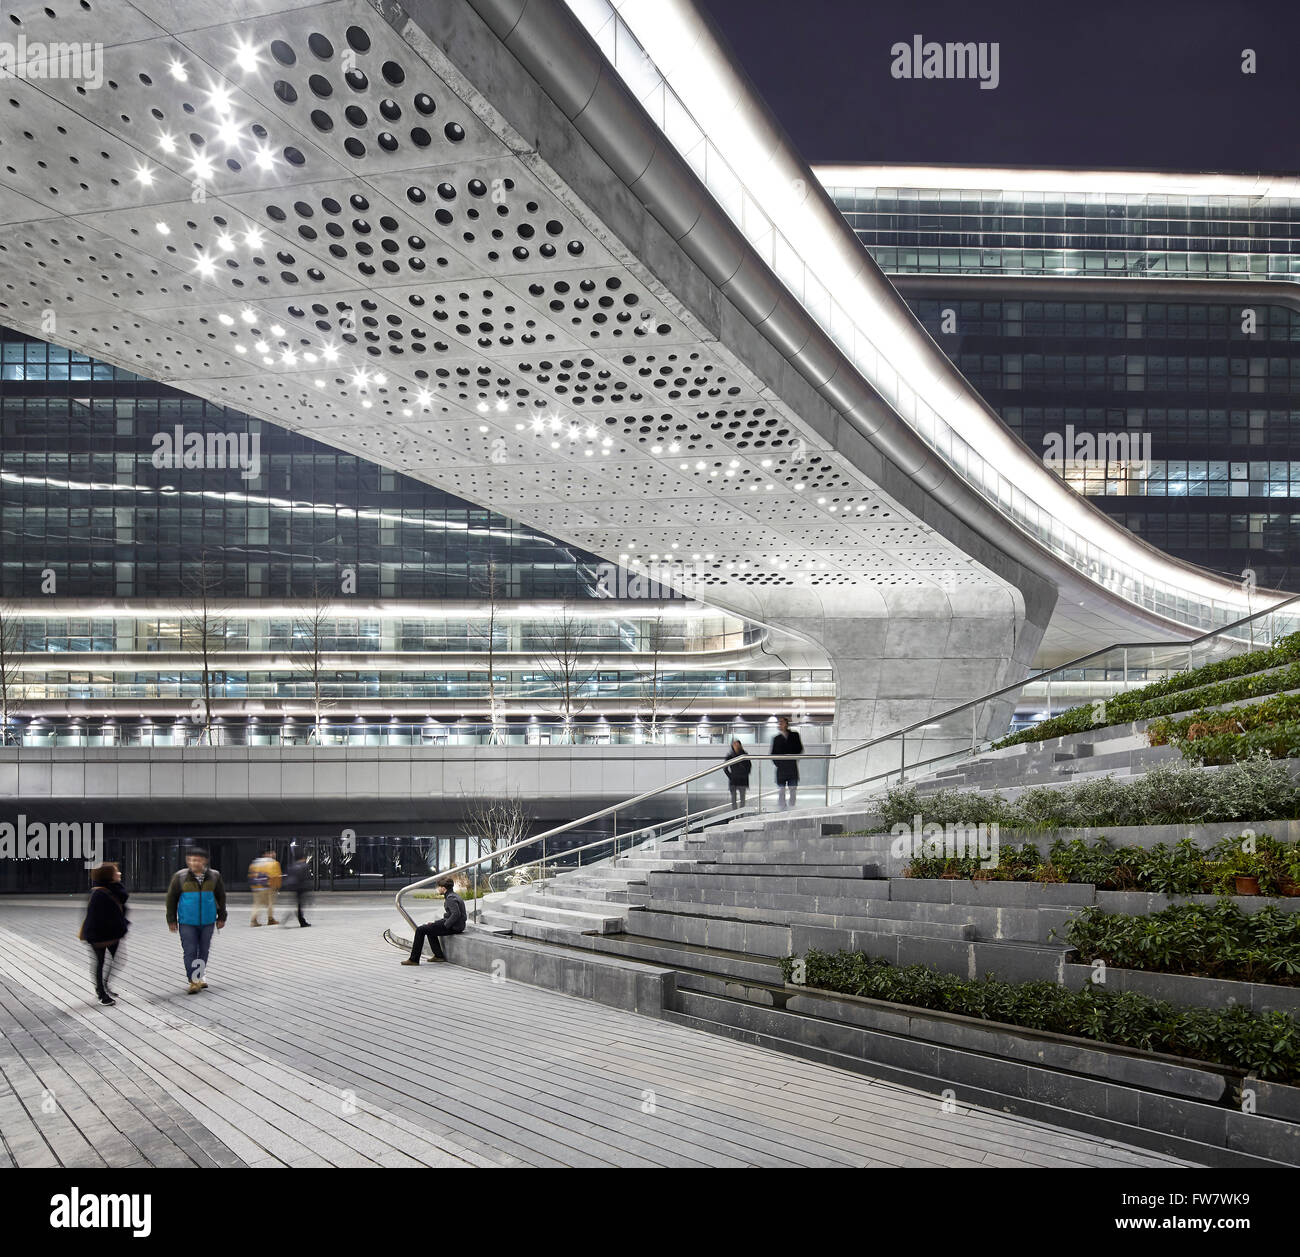 Angelegten Gehwege und Untersicht der Brücke. Himmel SOHO, Shanghai, China. Architekt: Zaha Hadid Architects, 2014. Stockfoto